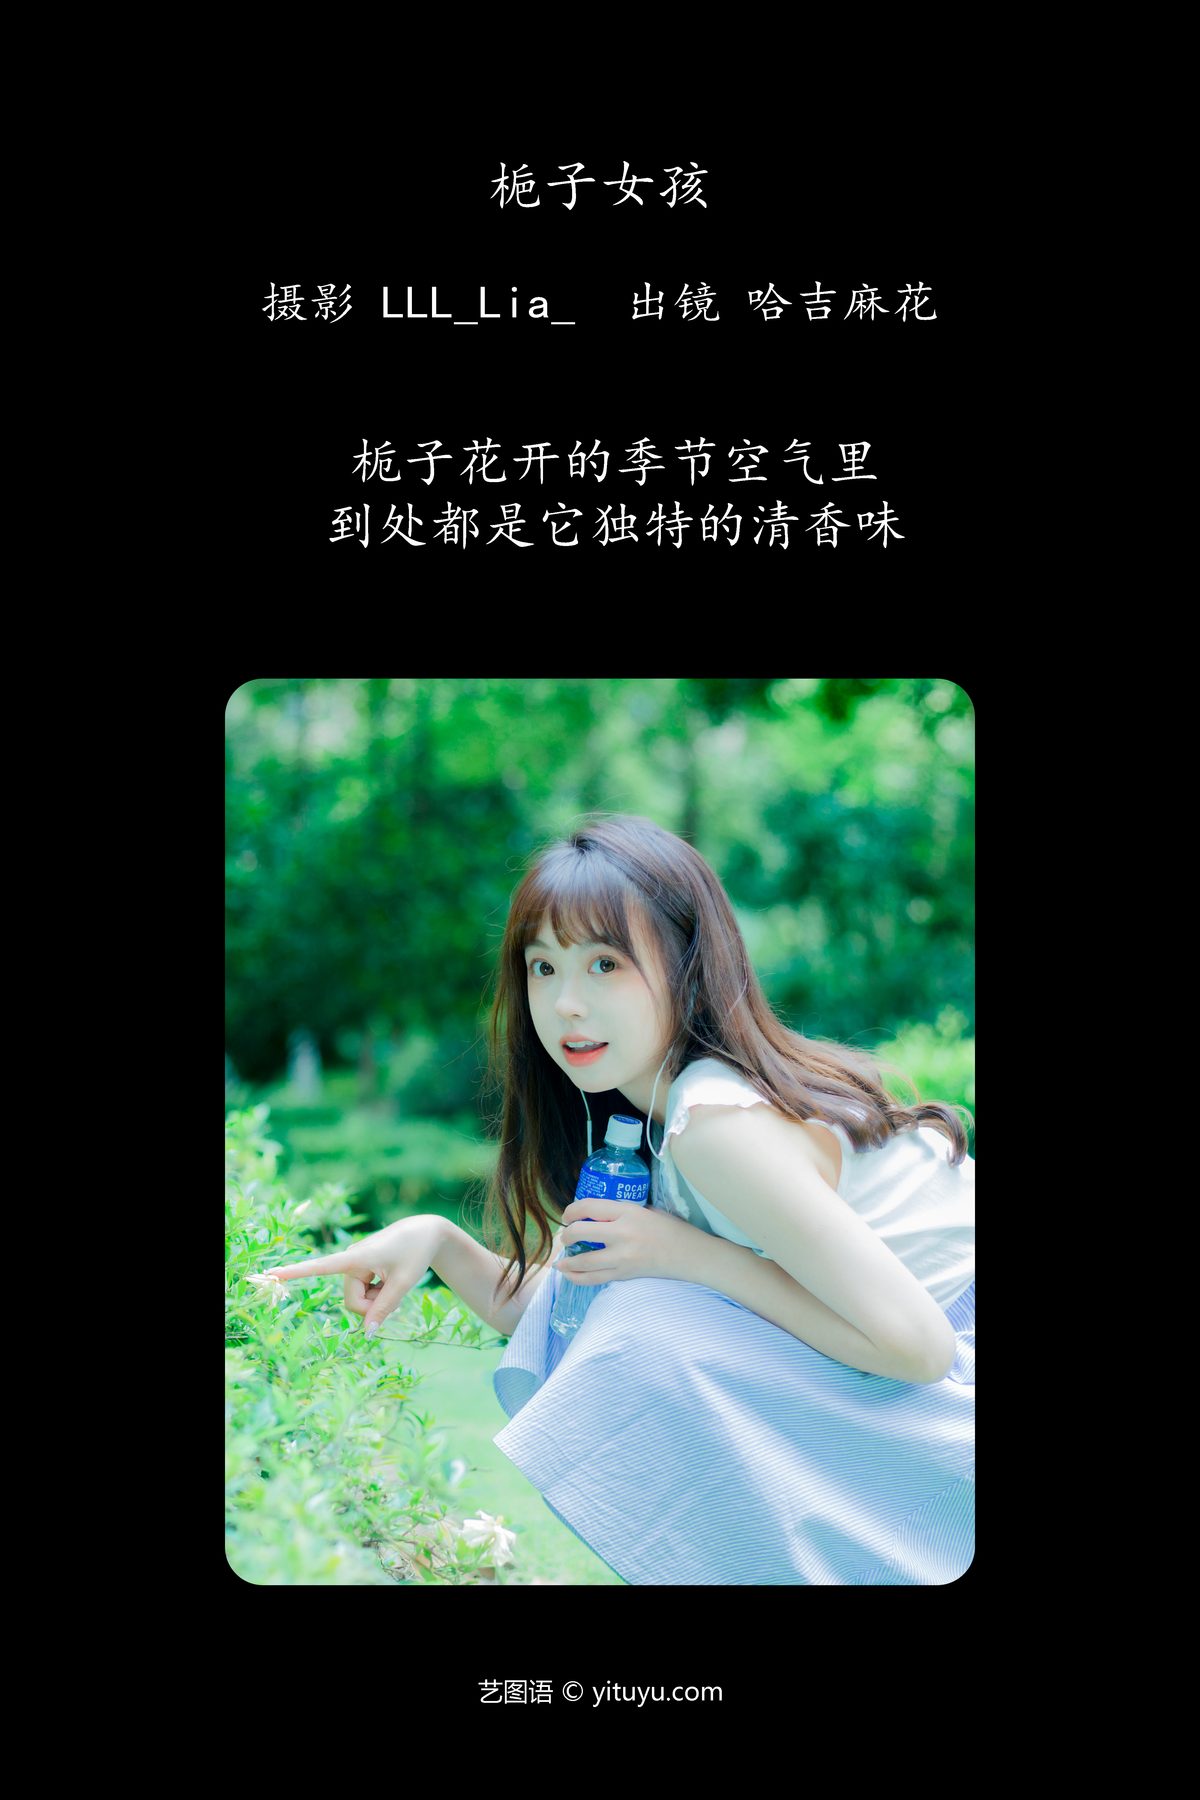 YiTuYu艺图语 Vol 4732 Ha Ji Ma Hua 0002 6784290170.jpg